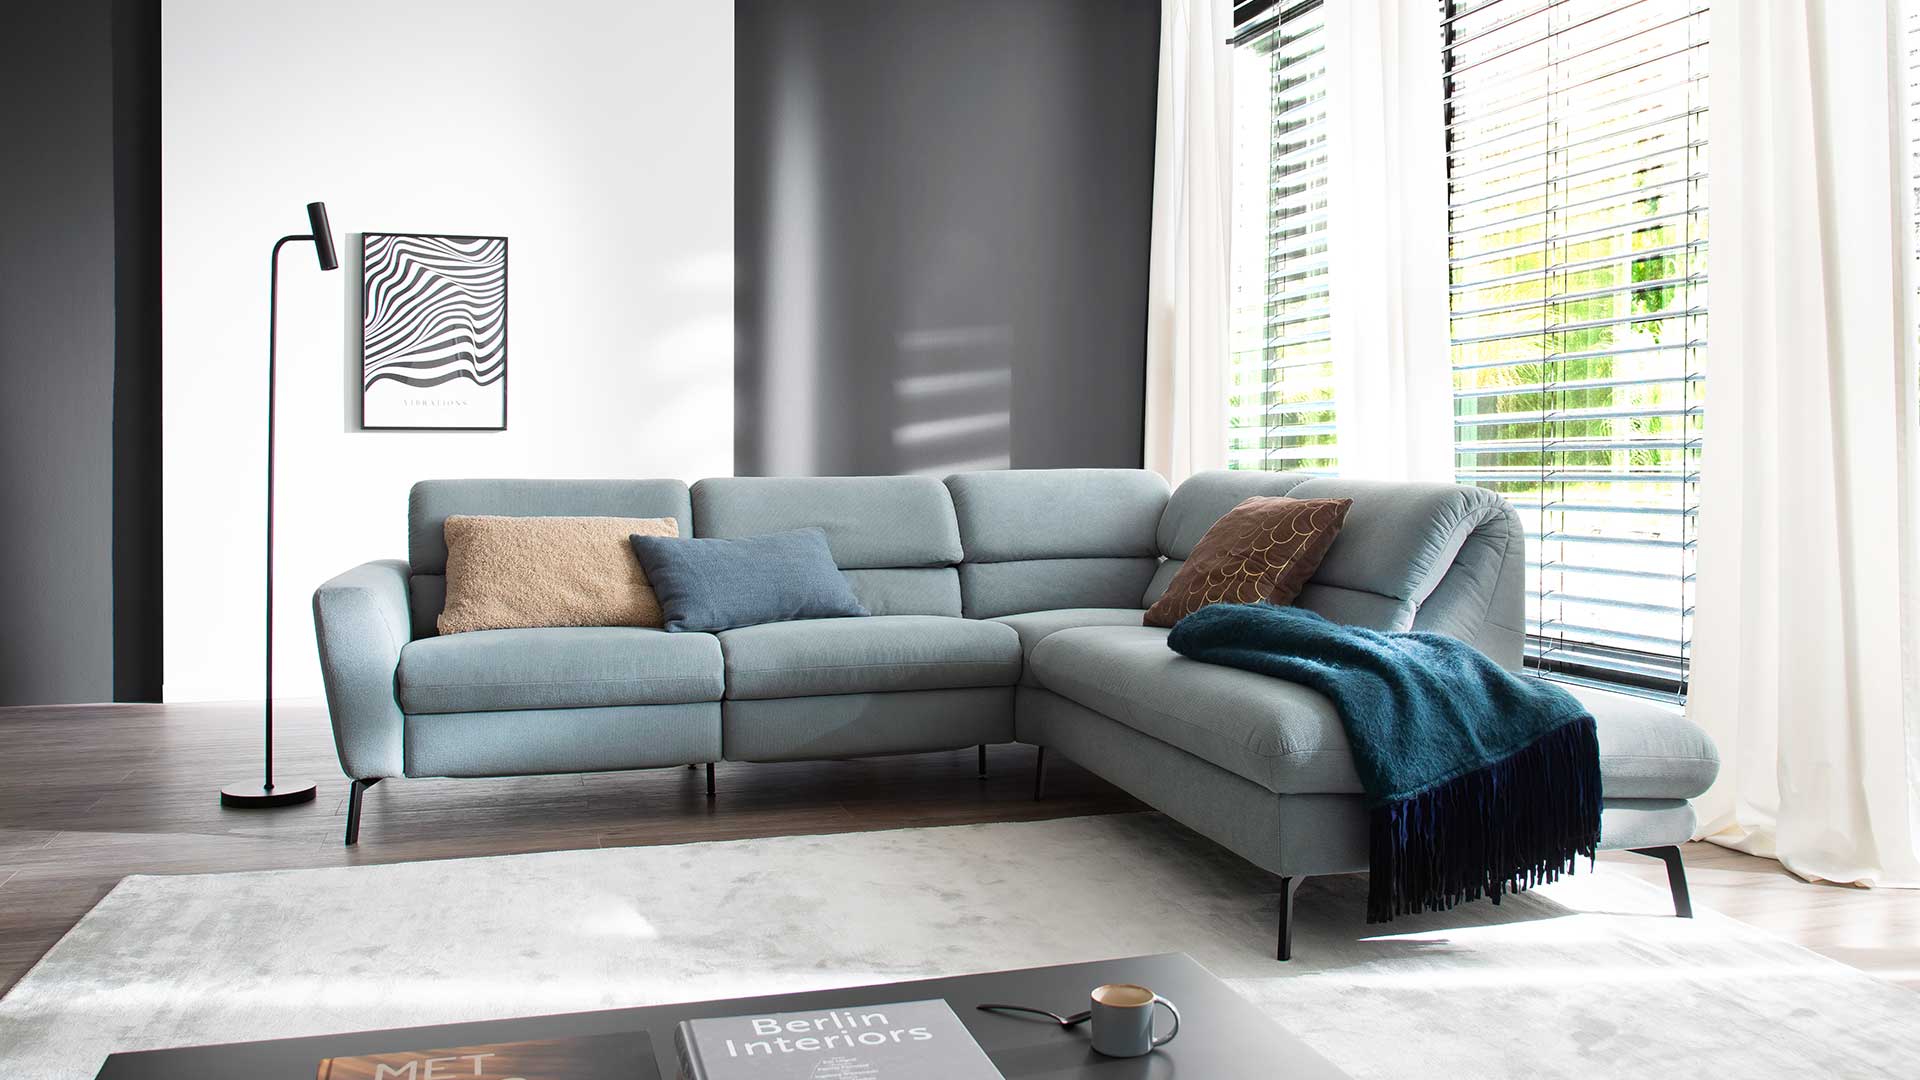 Gemütliches und modernes Sofa mit verstellbarer Rückenlehne.